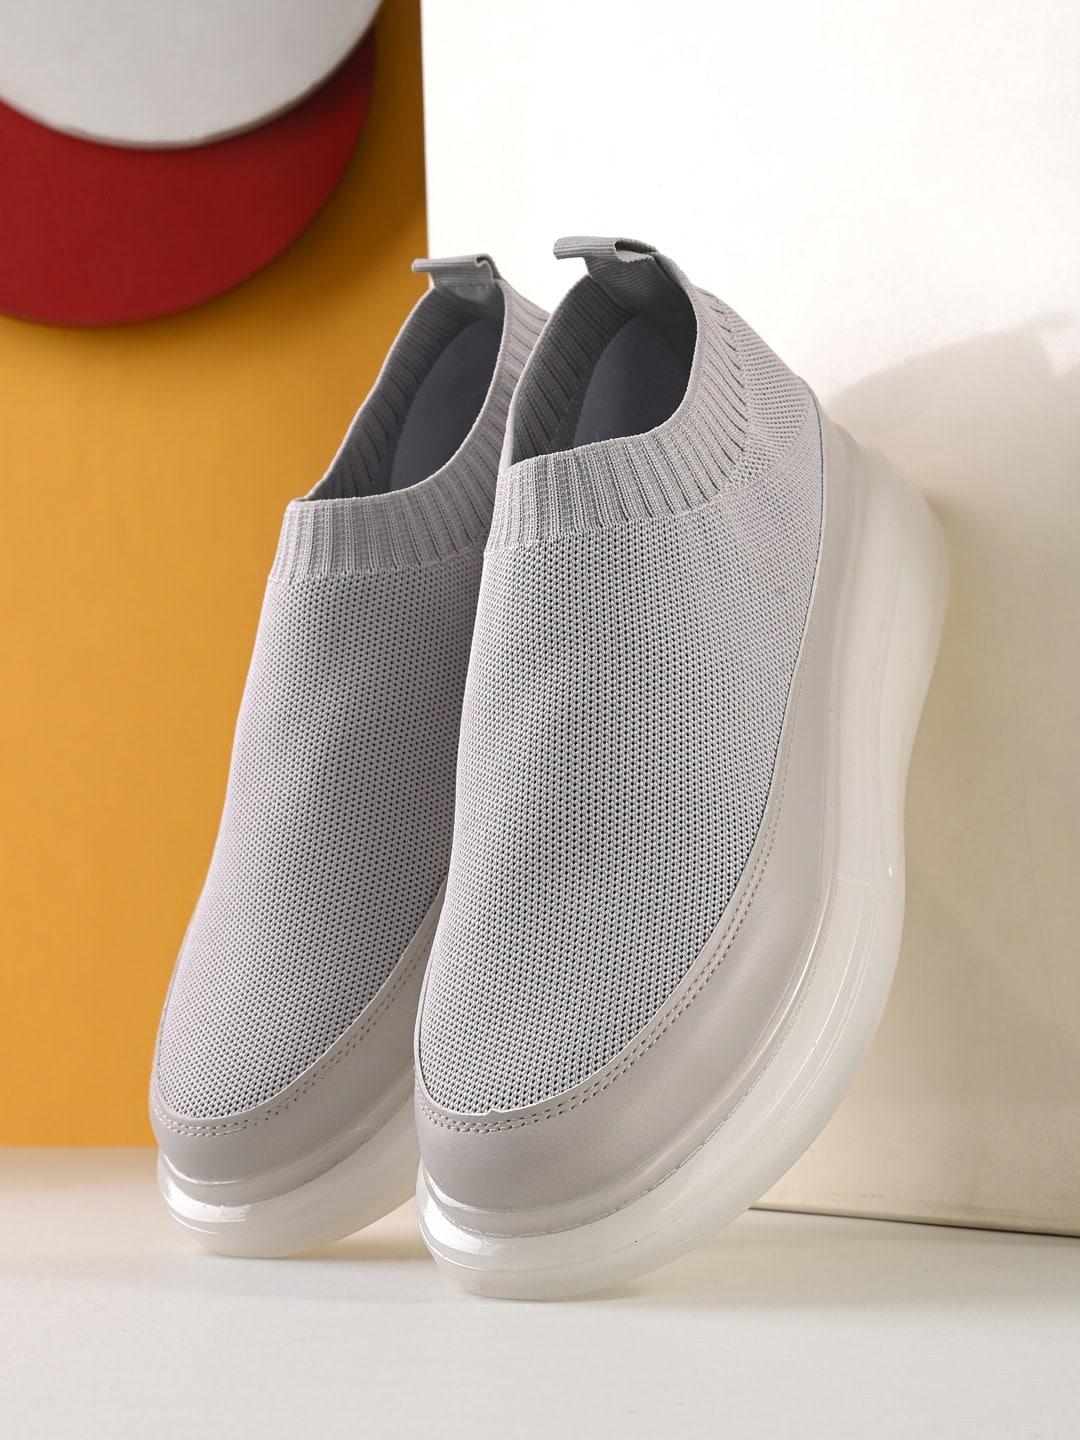 spykar-men-woven-design-knitted-sweat-absorbtion-contrast-sole-slip-on-sneakers